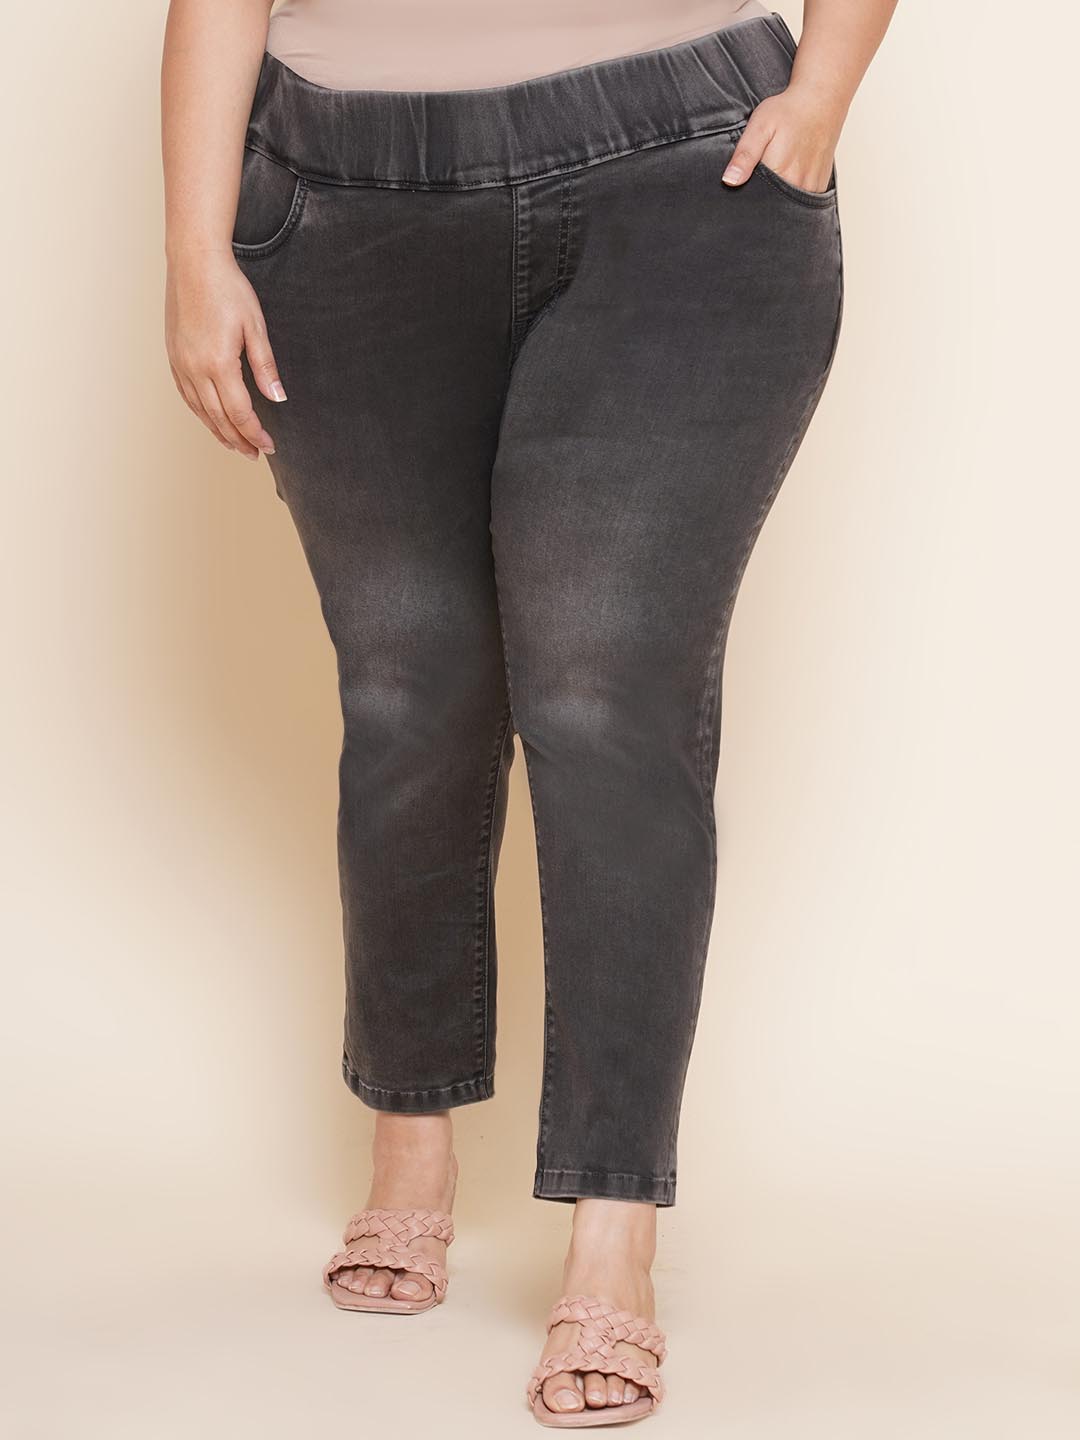 bottomwear_kiaahvi/jeans/KIJ6004/kij6004-3.jpg